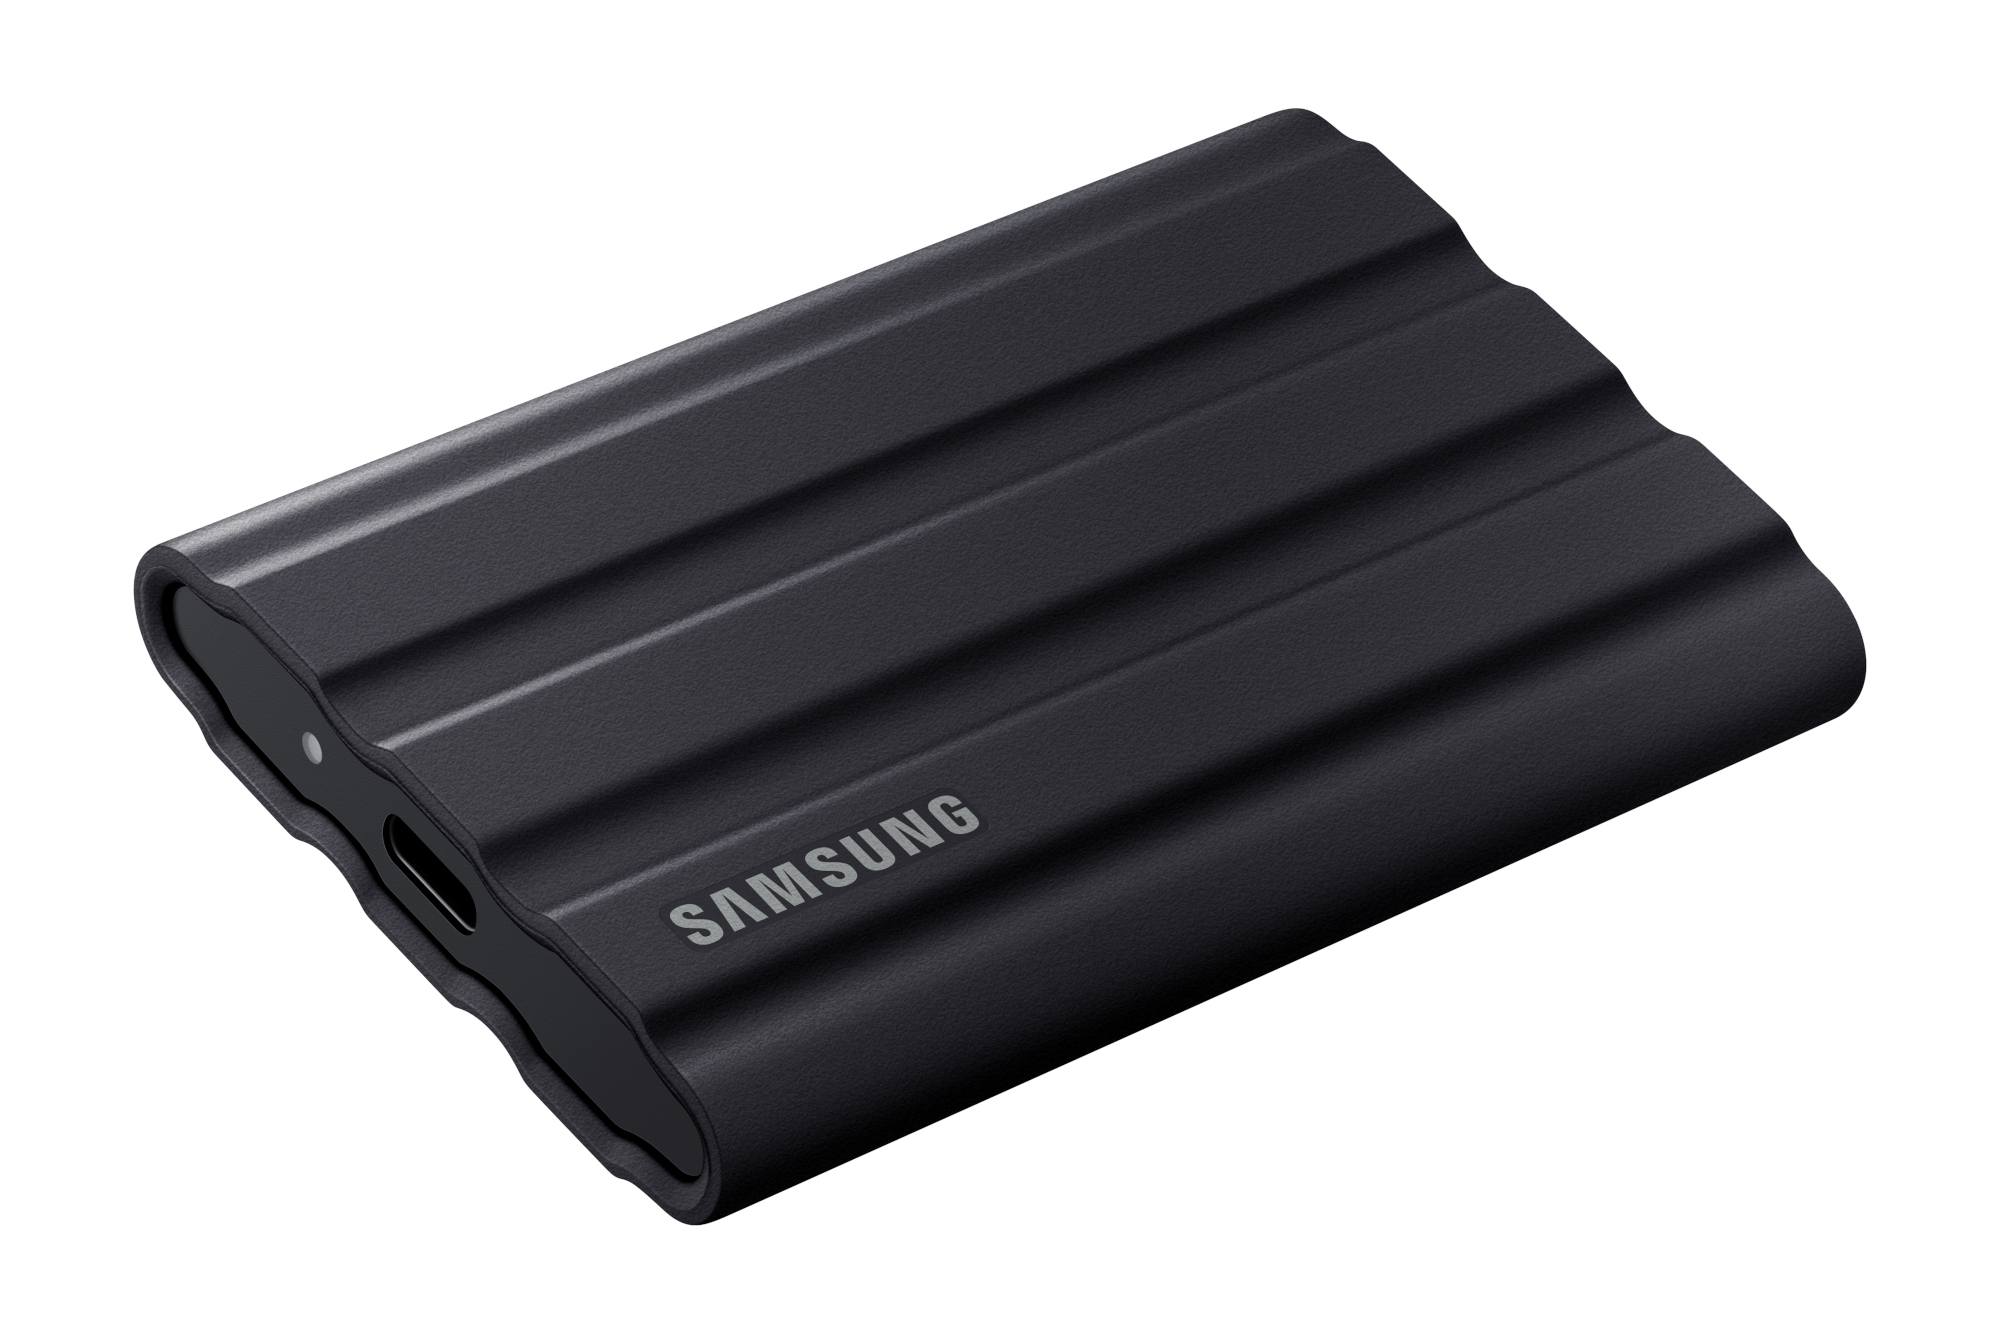 Samsung T7 Shield - بهترین عملکرد درایو USB